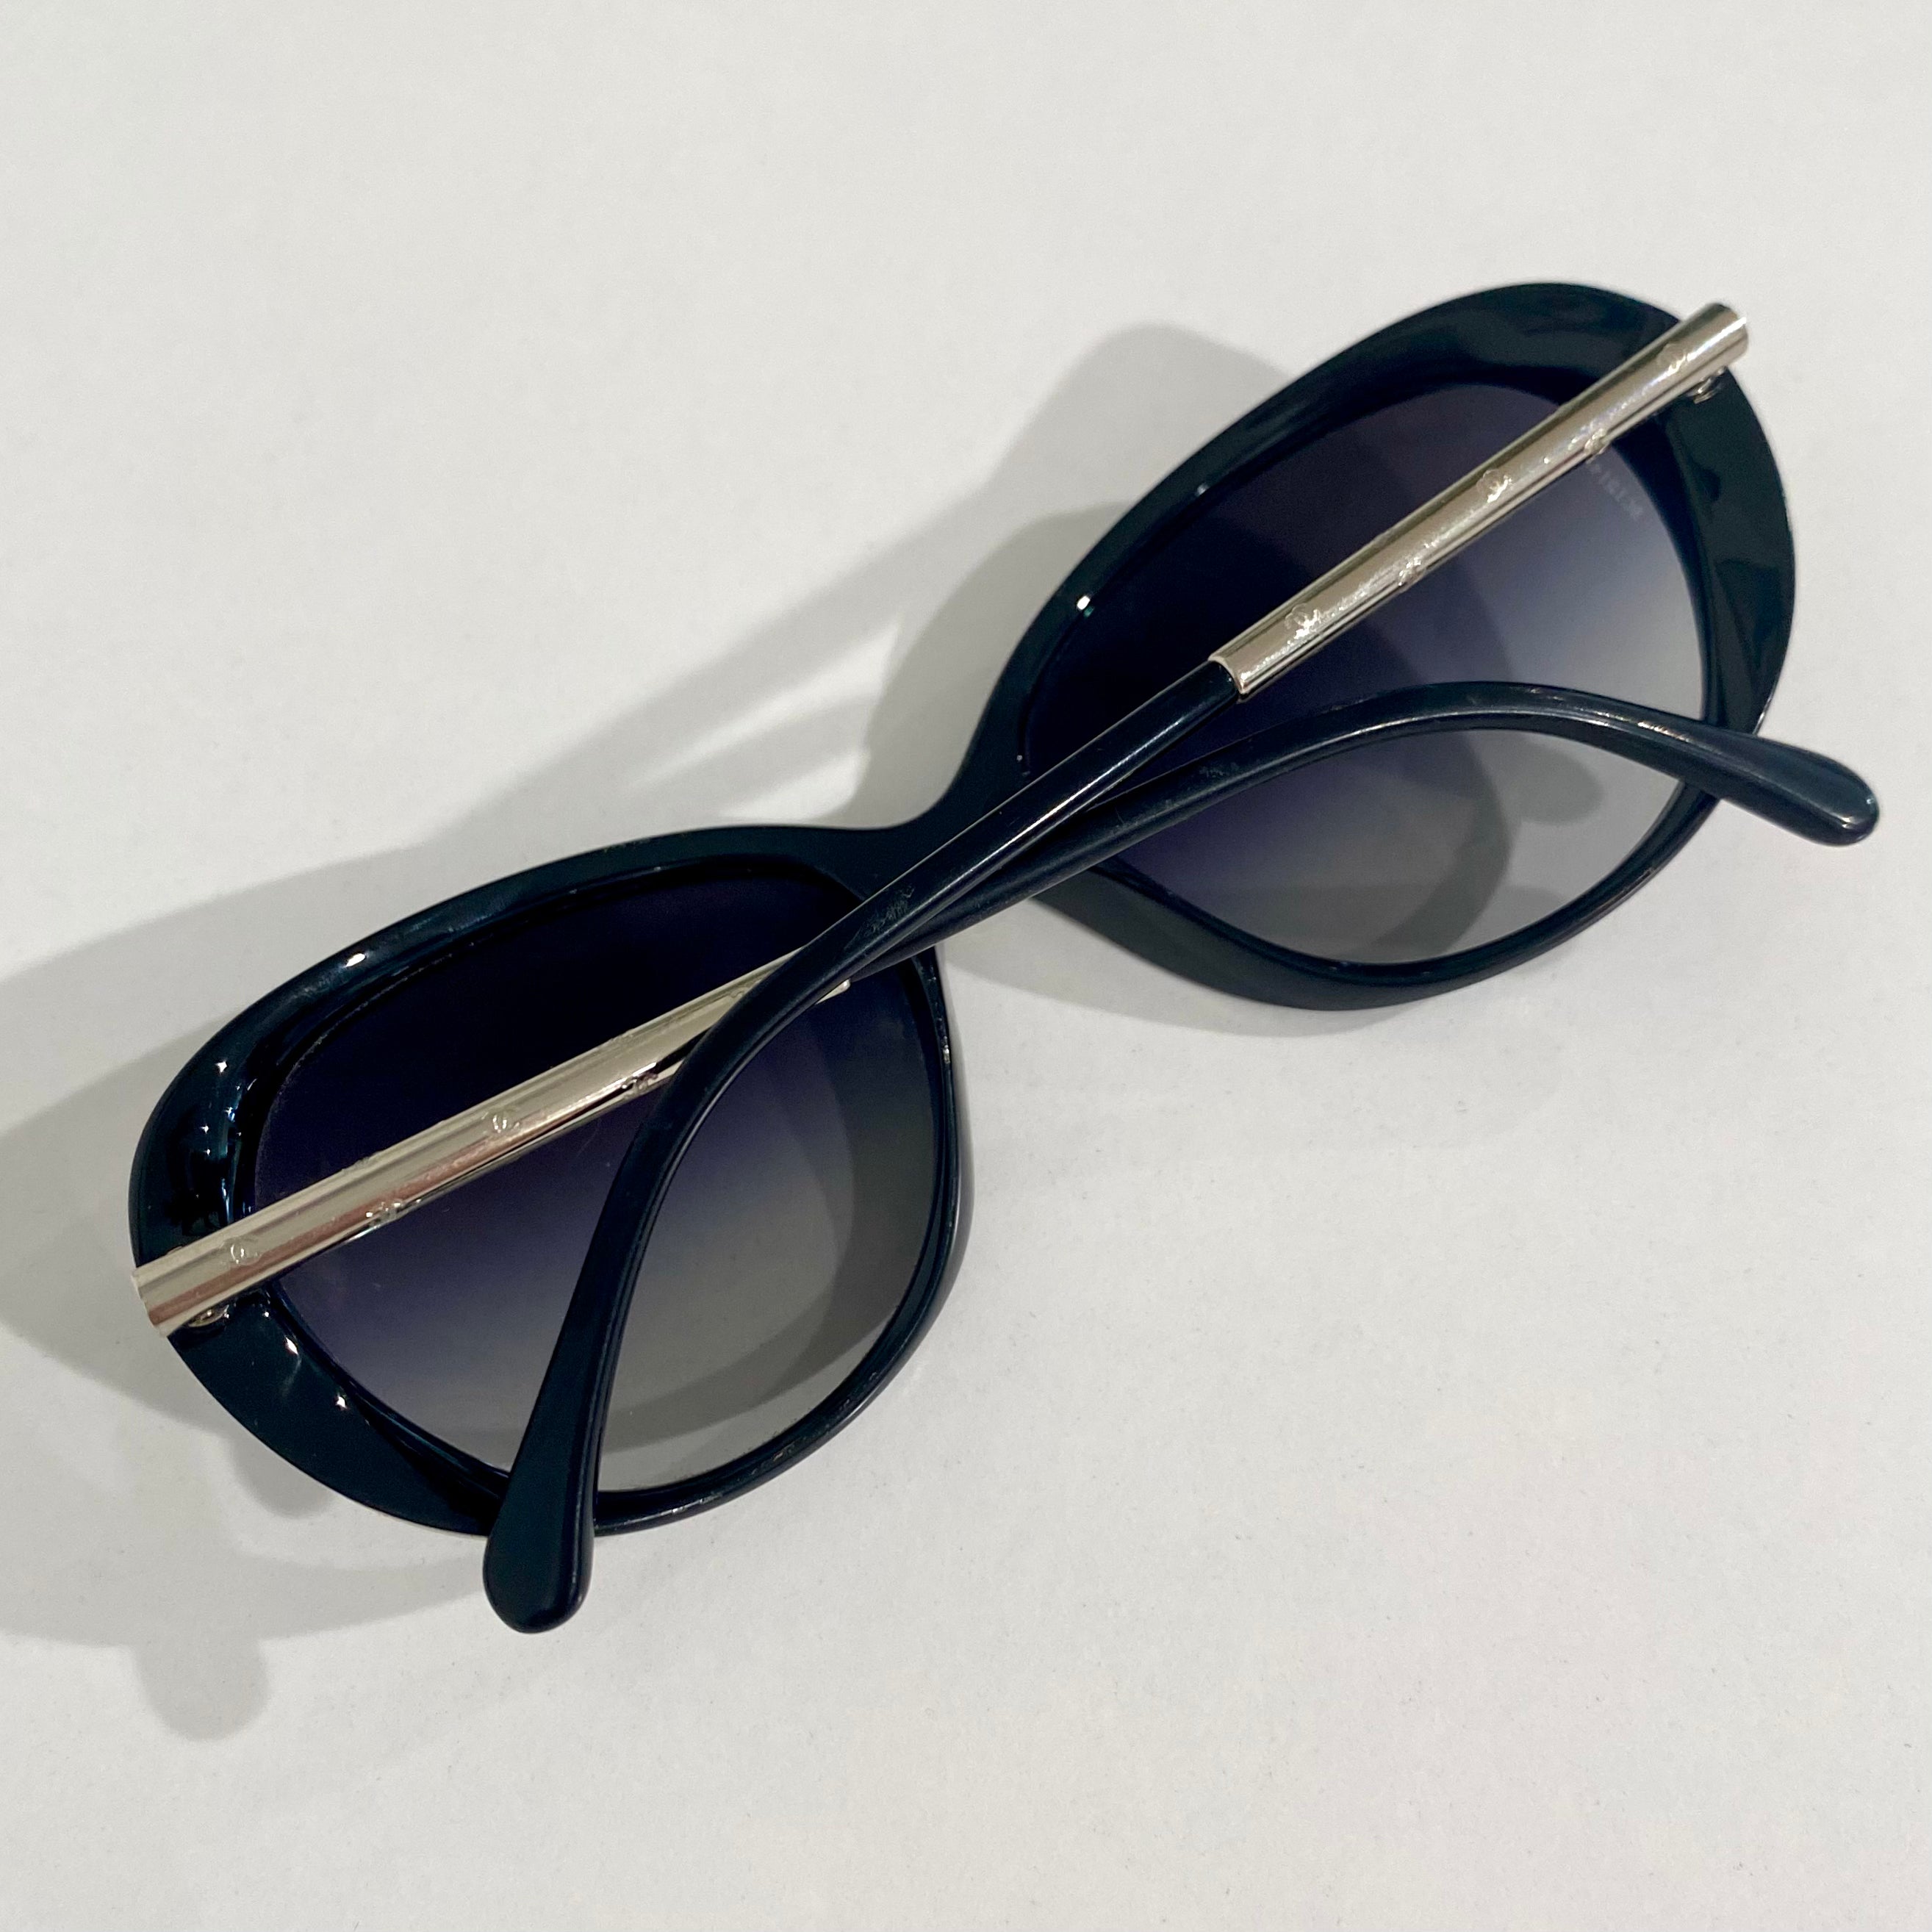 Chanel Black & Silver CC Sunglasses